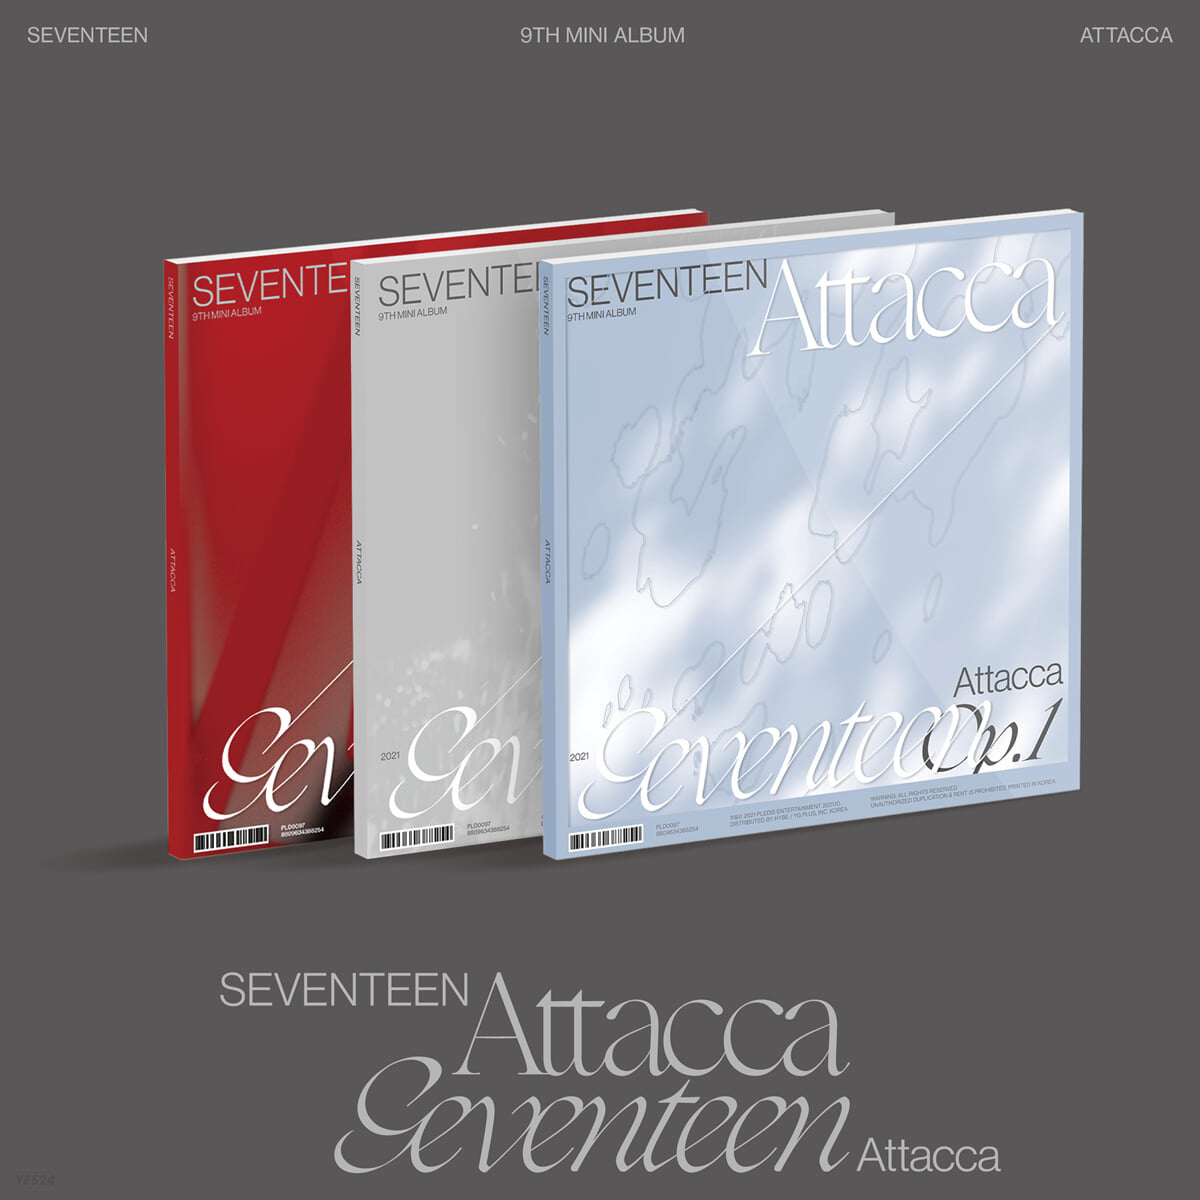 SEVENTEEN Attacca Album